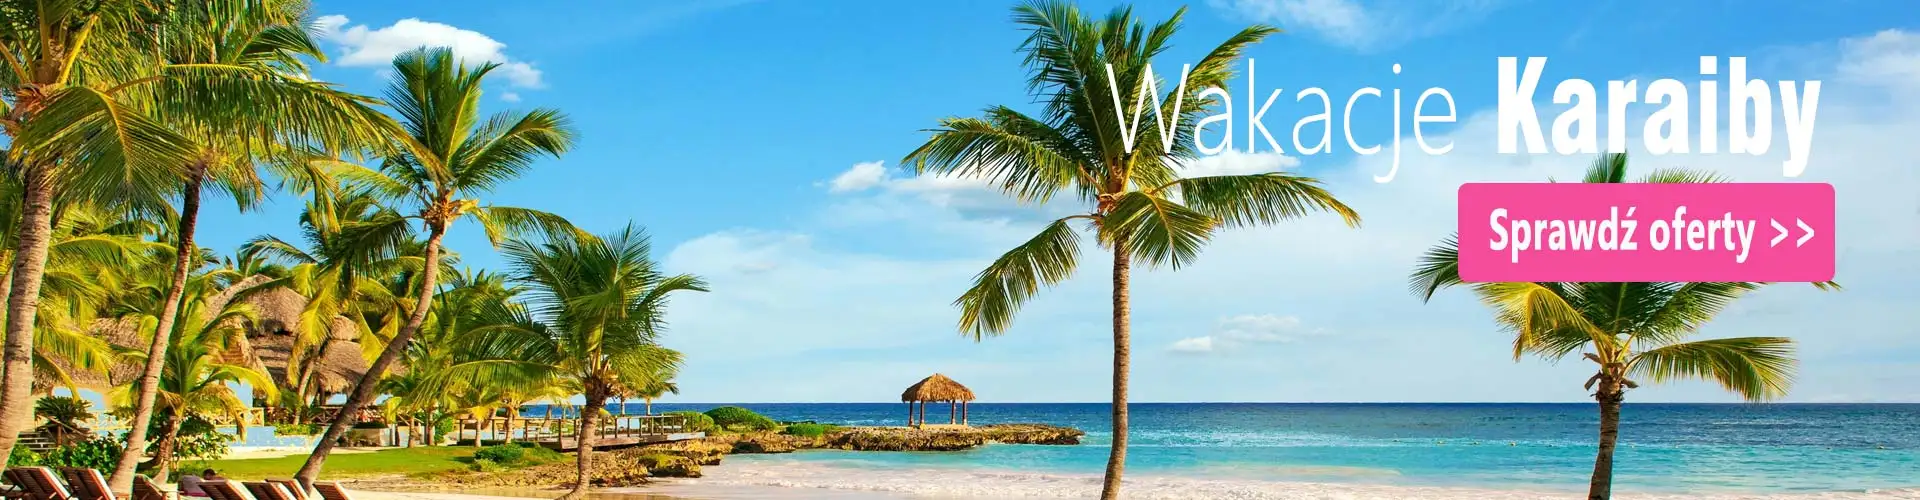 Karaiby wakacje i wypoczynek